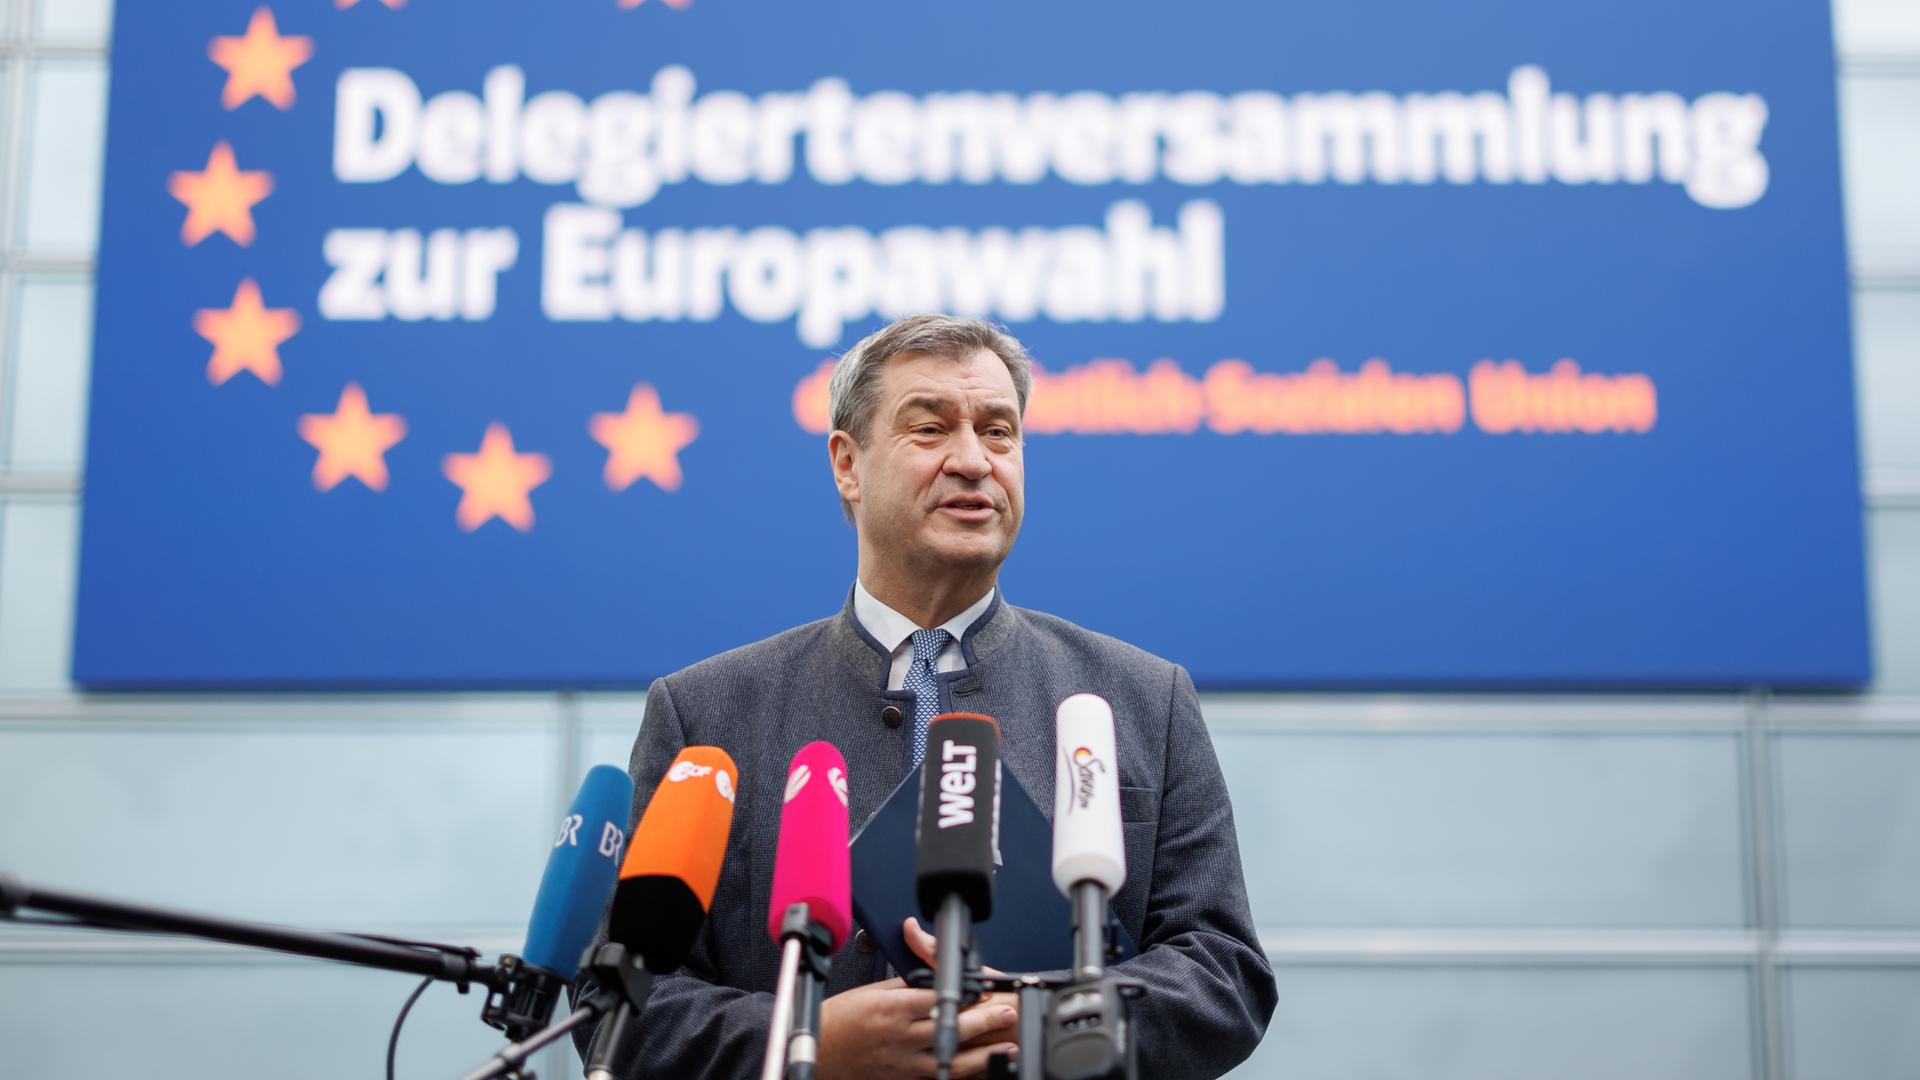 Markus Söder (CSU), Ministerpräsident von Bayern, spricht zu Journalisten. Vor ihm sind mehrere Mikrofone aufgestellt. Hinter ihm ist ein Banner mit der Aufschrift "Delegiertenversammlung zur Europawahl".